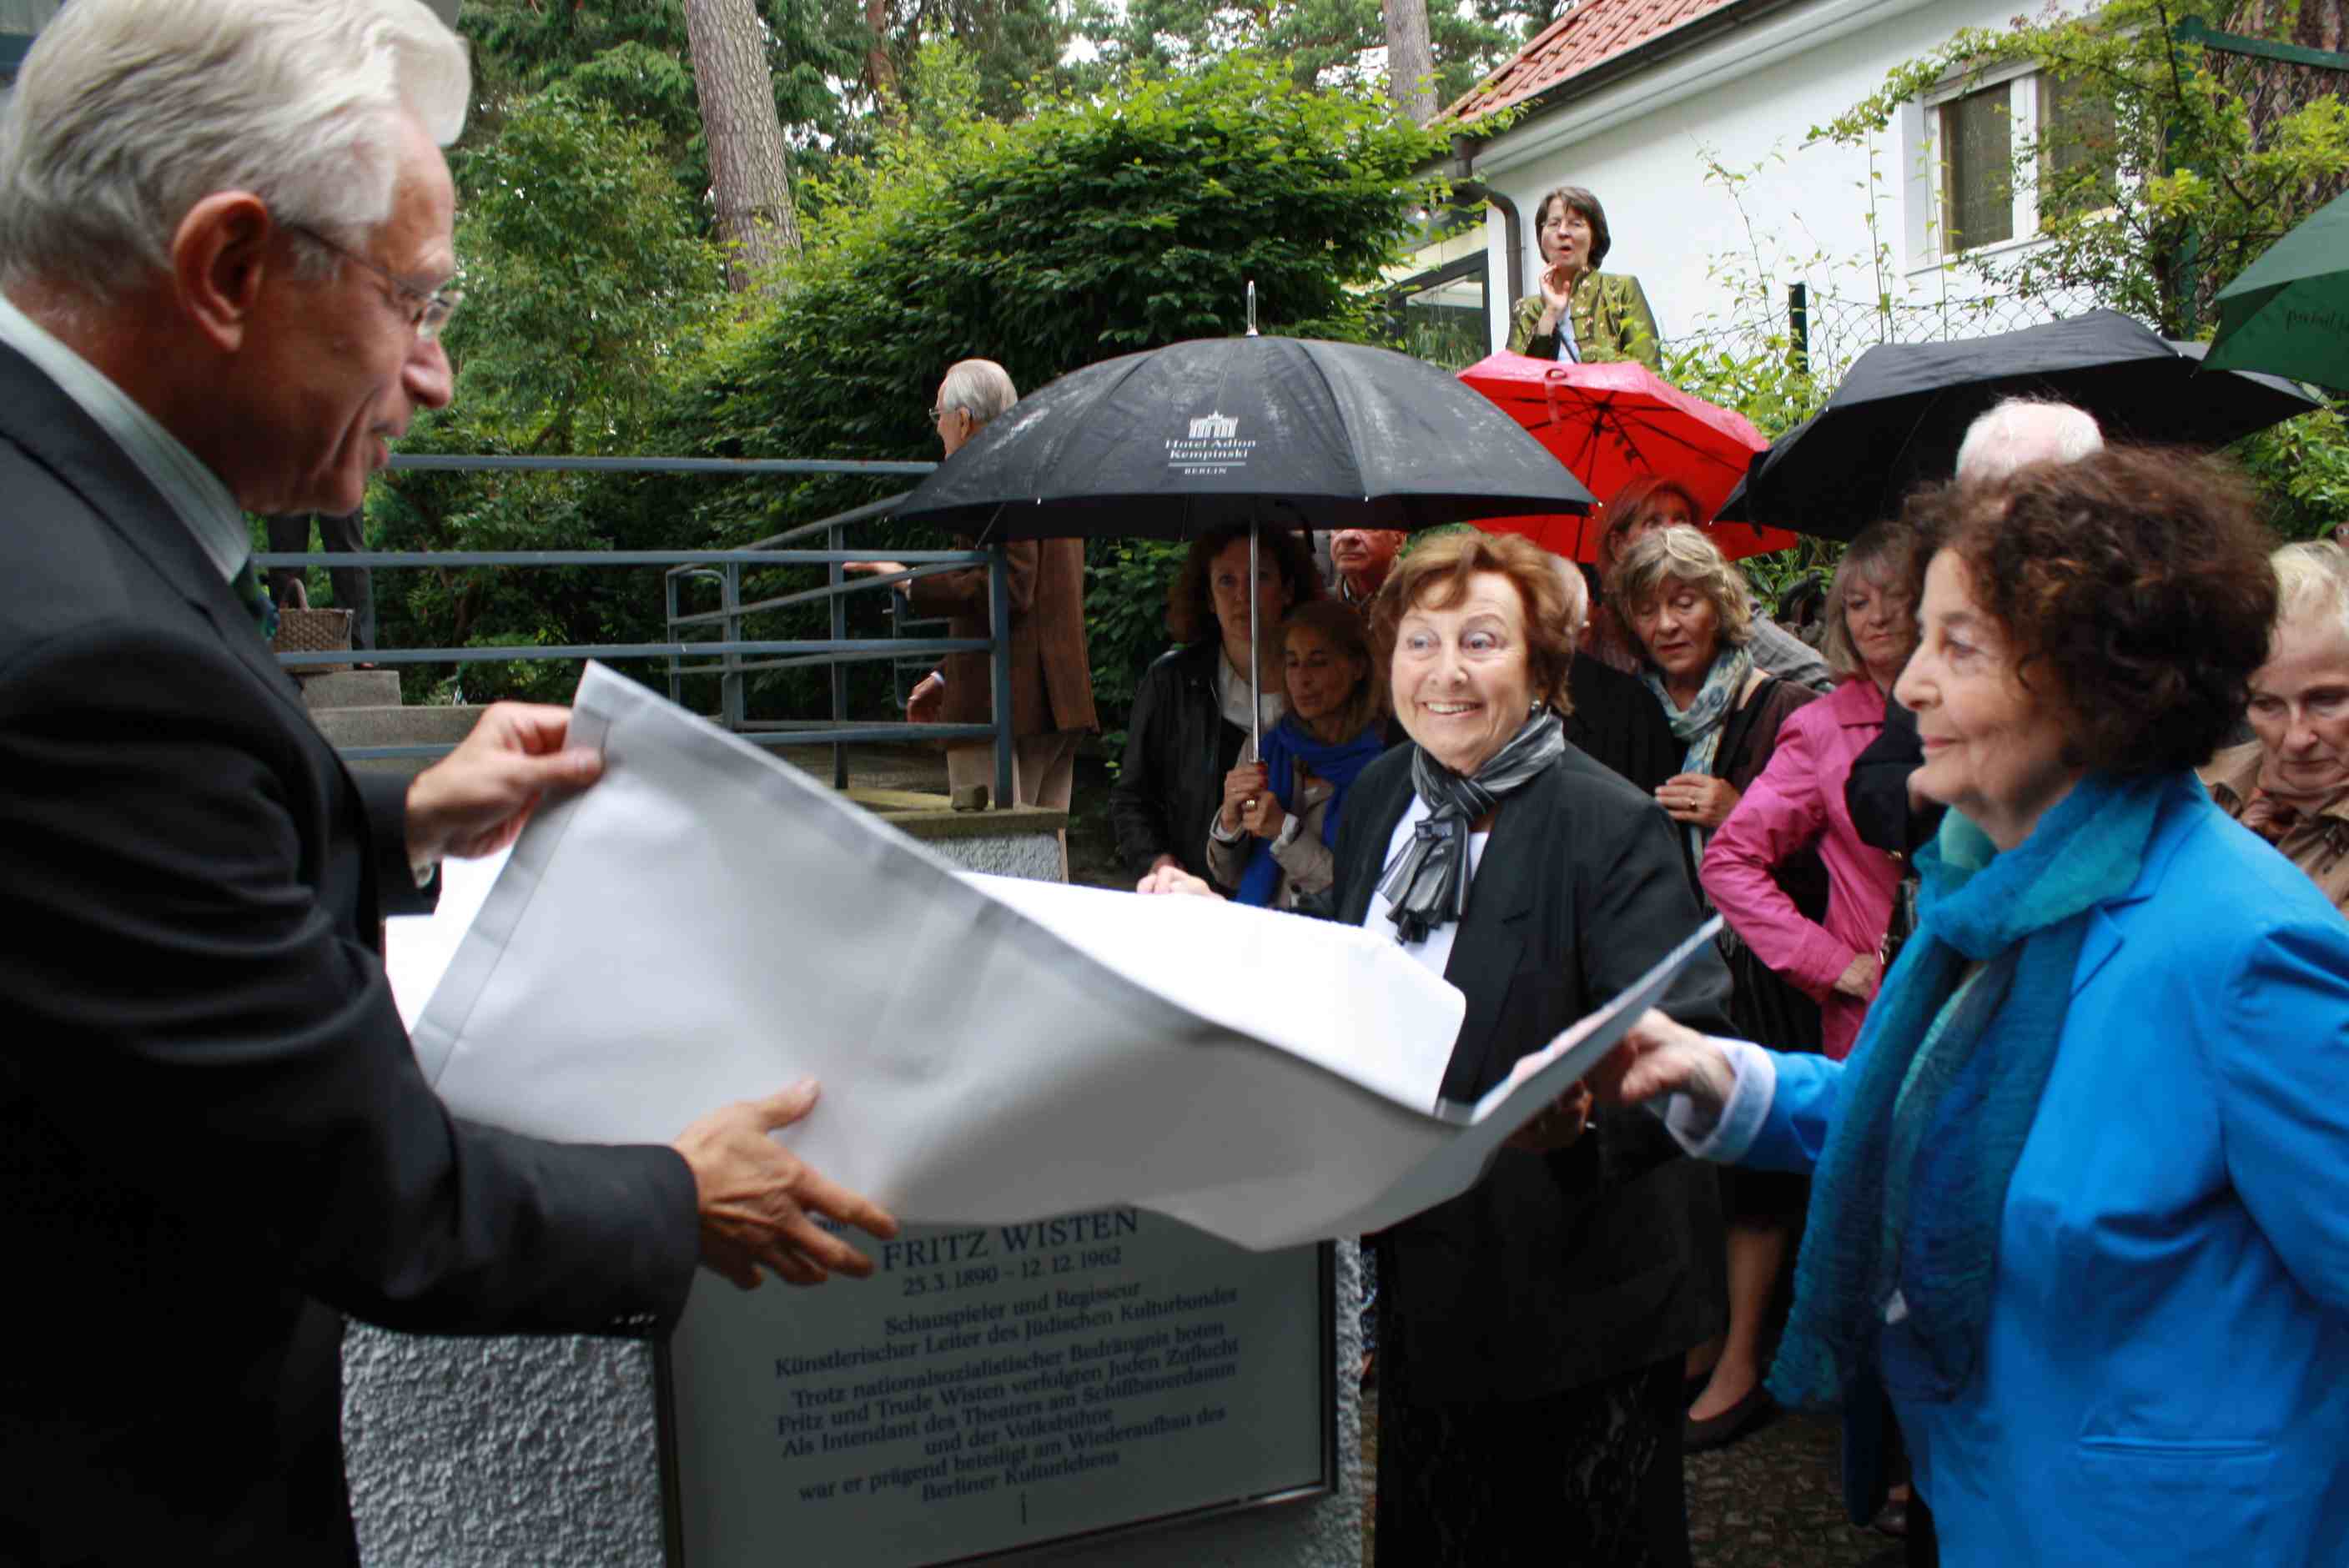 „Mut und Menschlichkeit“: Gedenktafel für Fritz Wisten in Nikolassee enthüllt